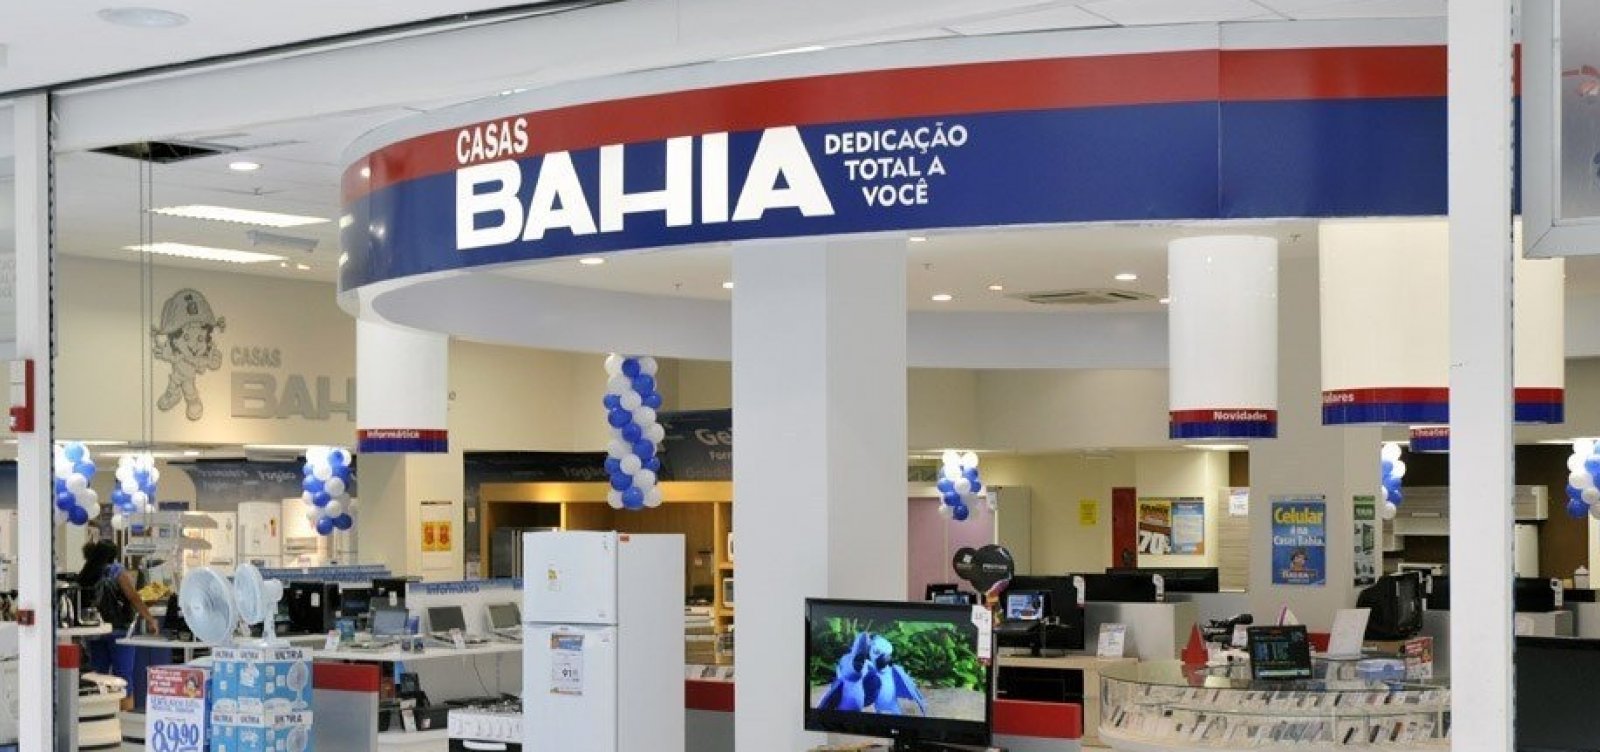 Casas Bahia são acionadas por problemas em vendas pela internet